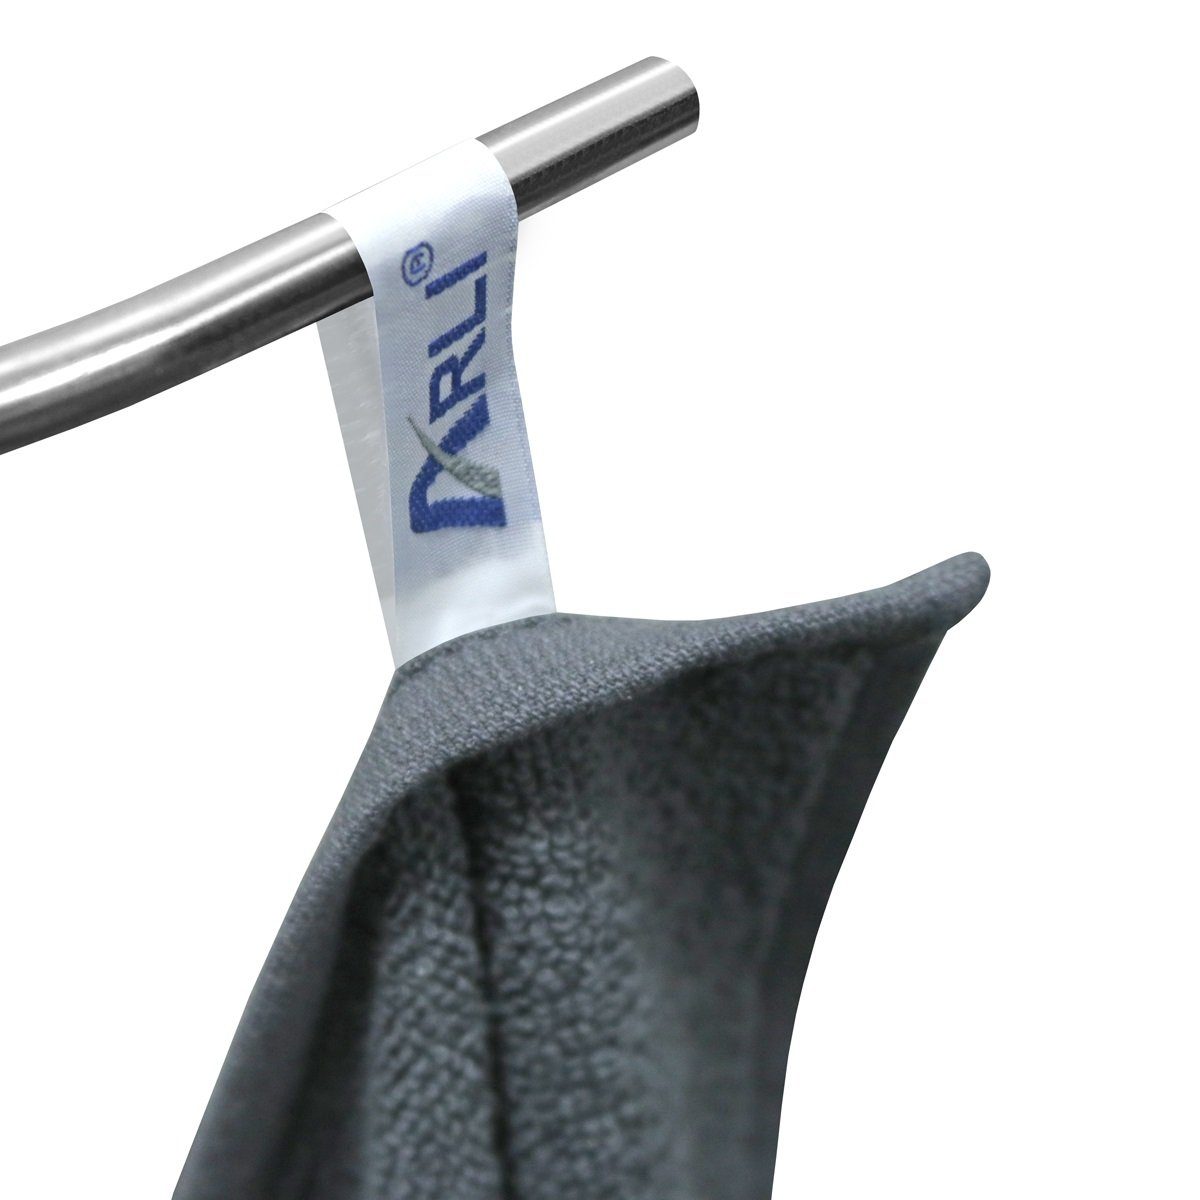 ARLI Handtuch Set Handtuch anthrazit Stück, 4 Serie praktisch x modern Set Baumwolle Handtuchaufhänger elegant 100% 8 Handtücher 4 mit schwarz (8-tlg) Frottier 8 + Design klassischer hochwertigem Rohstoff aus schlicht